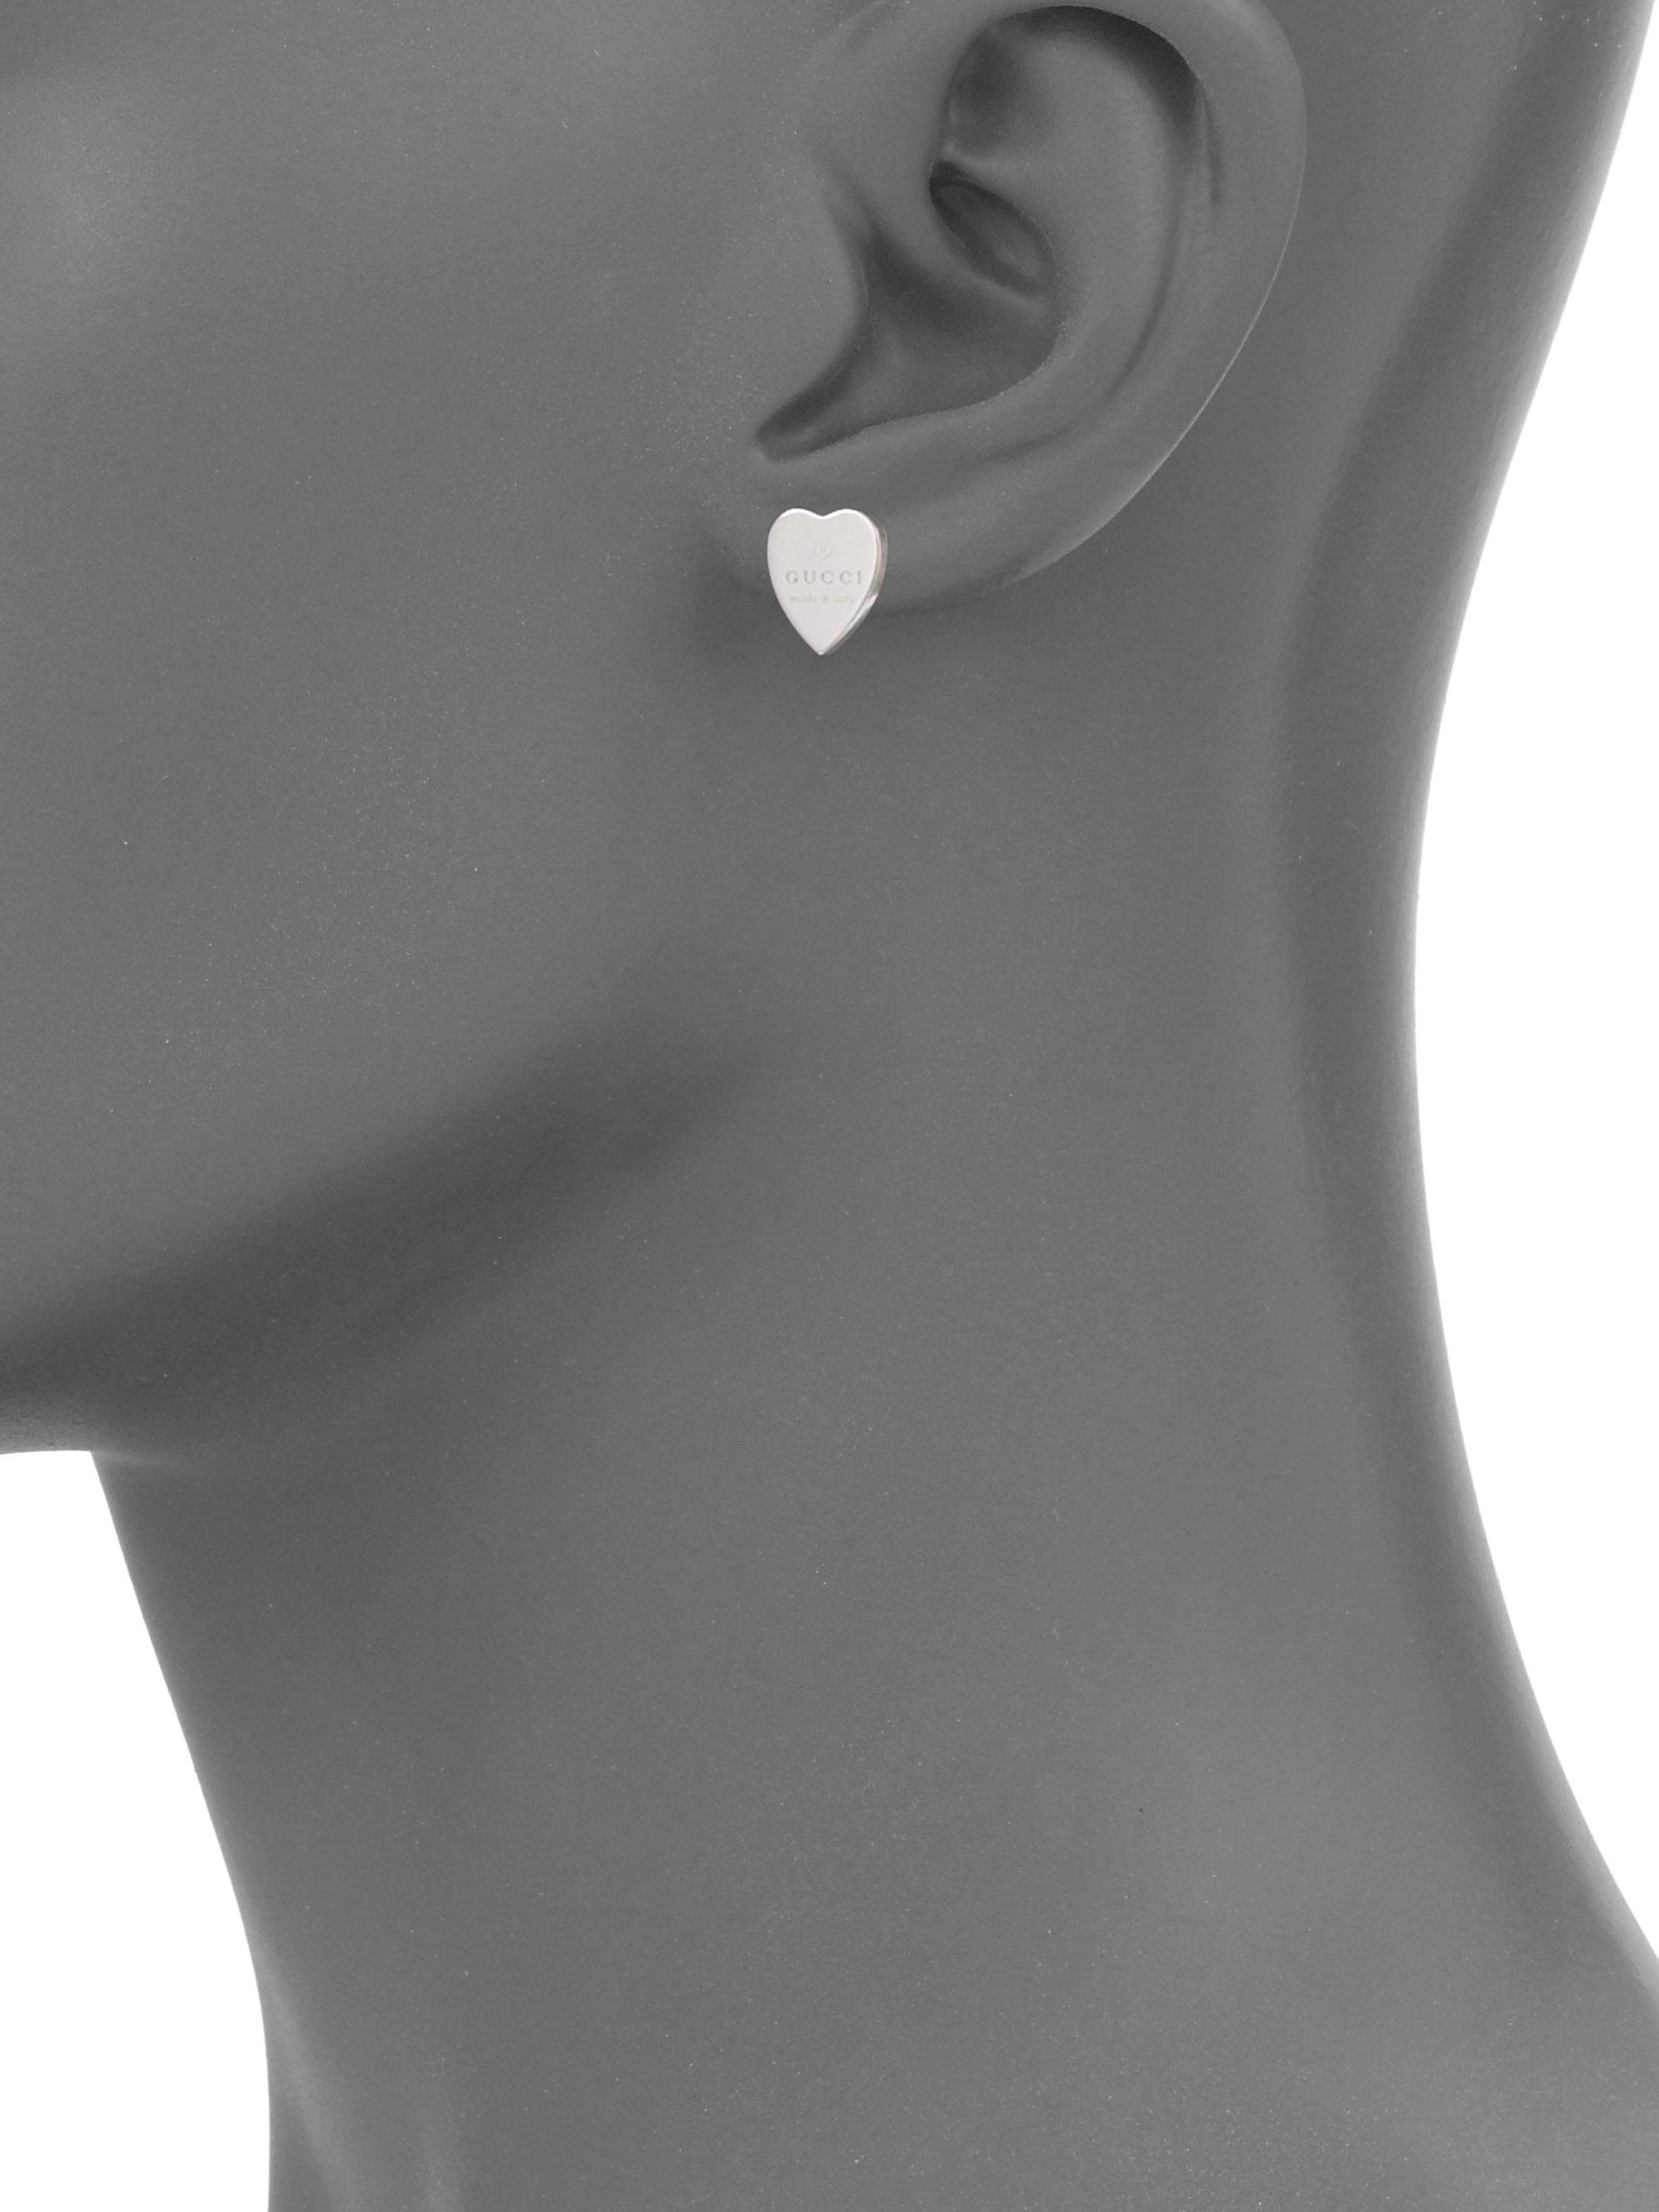 gucci earrings heart